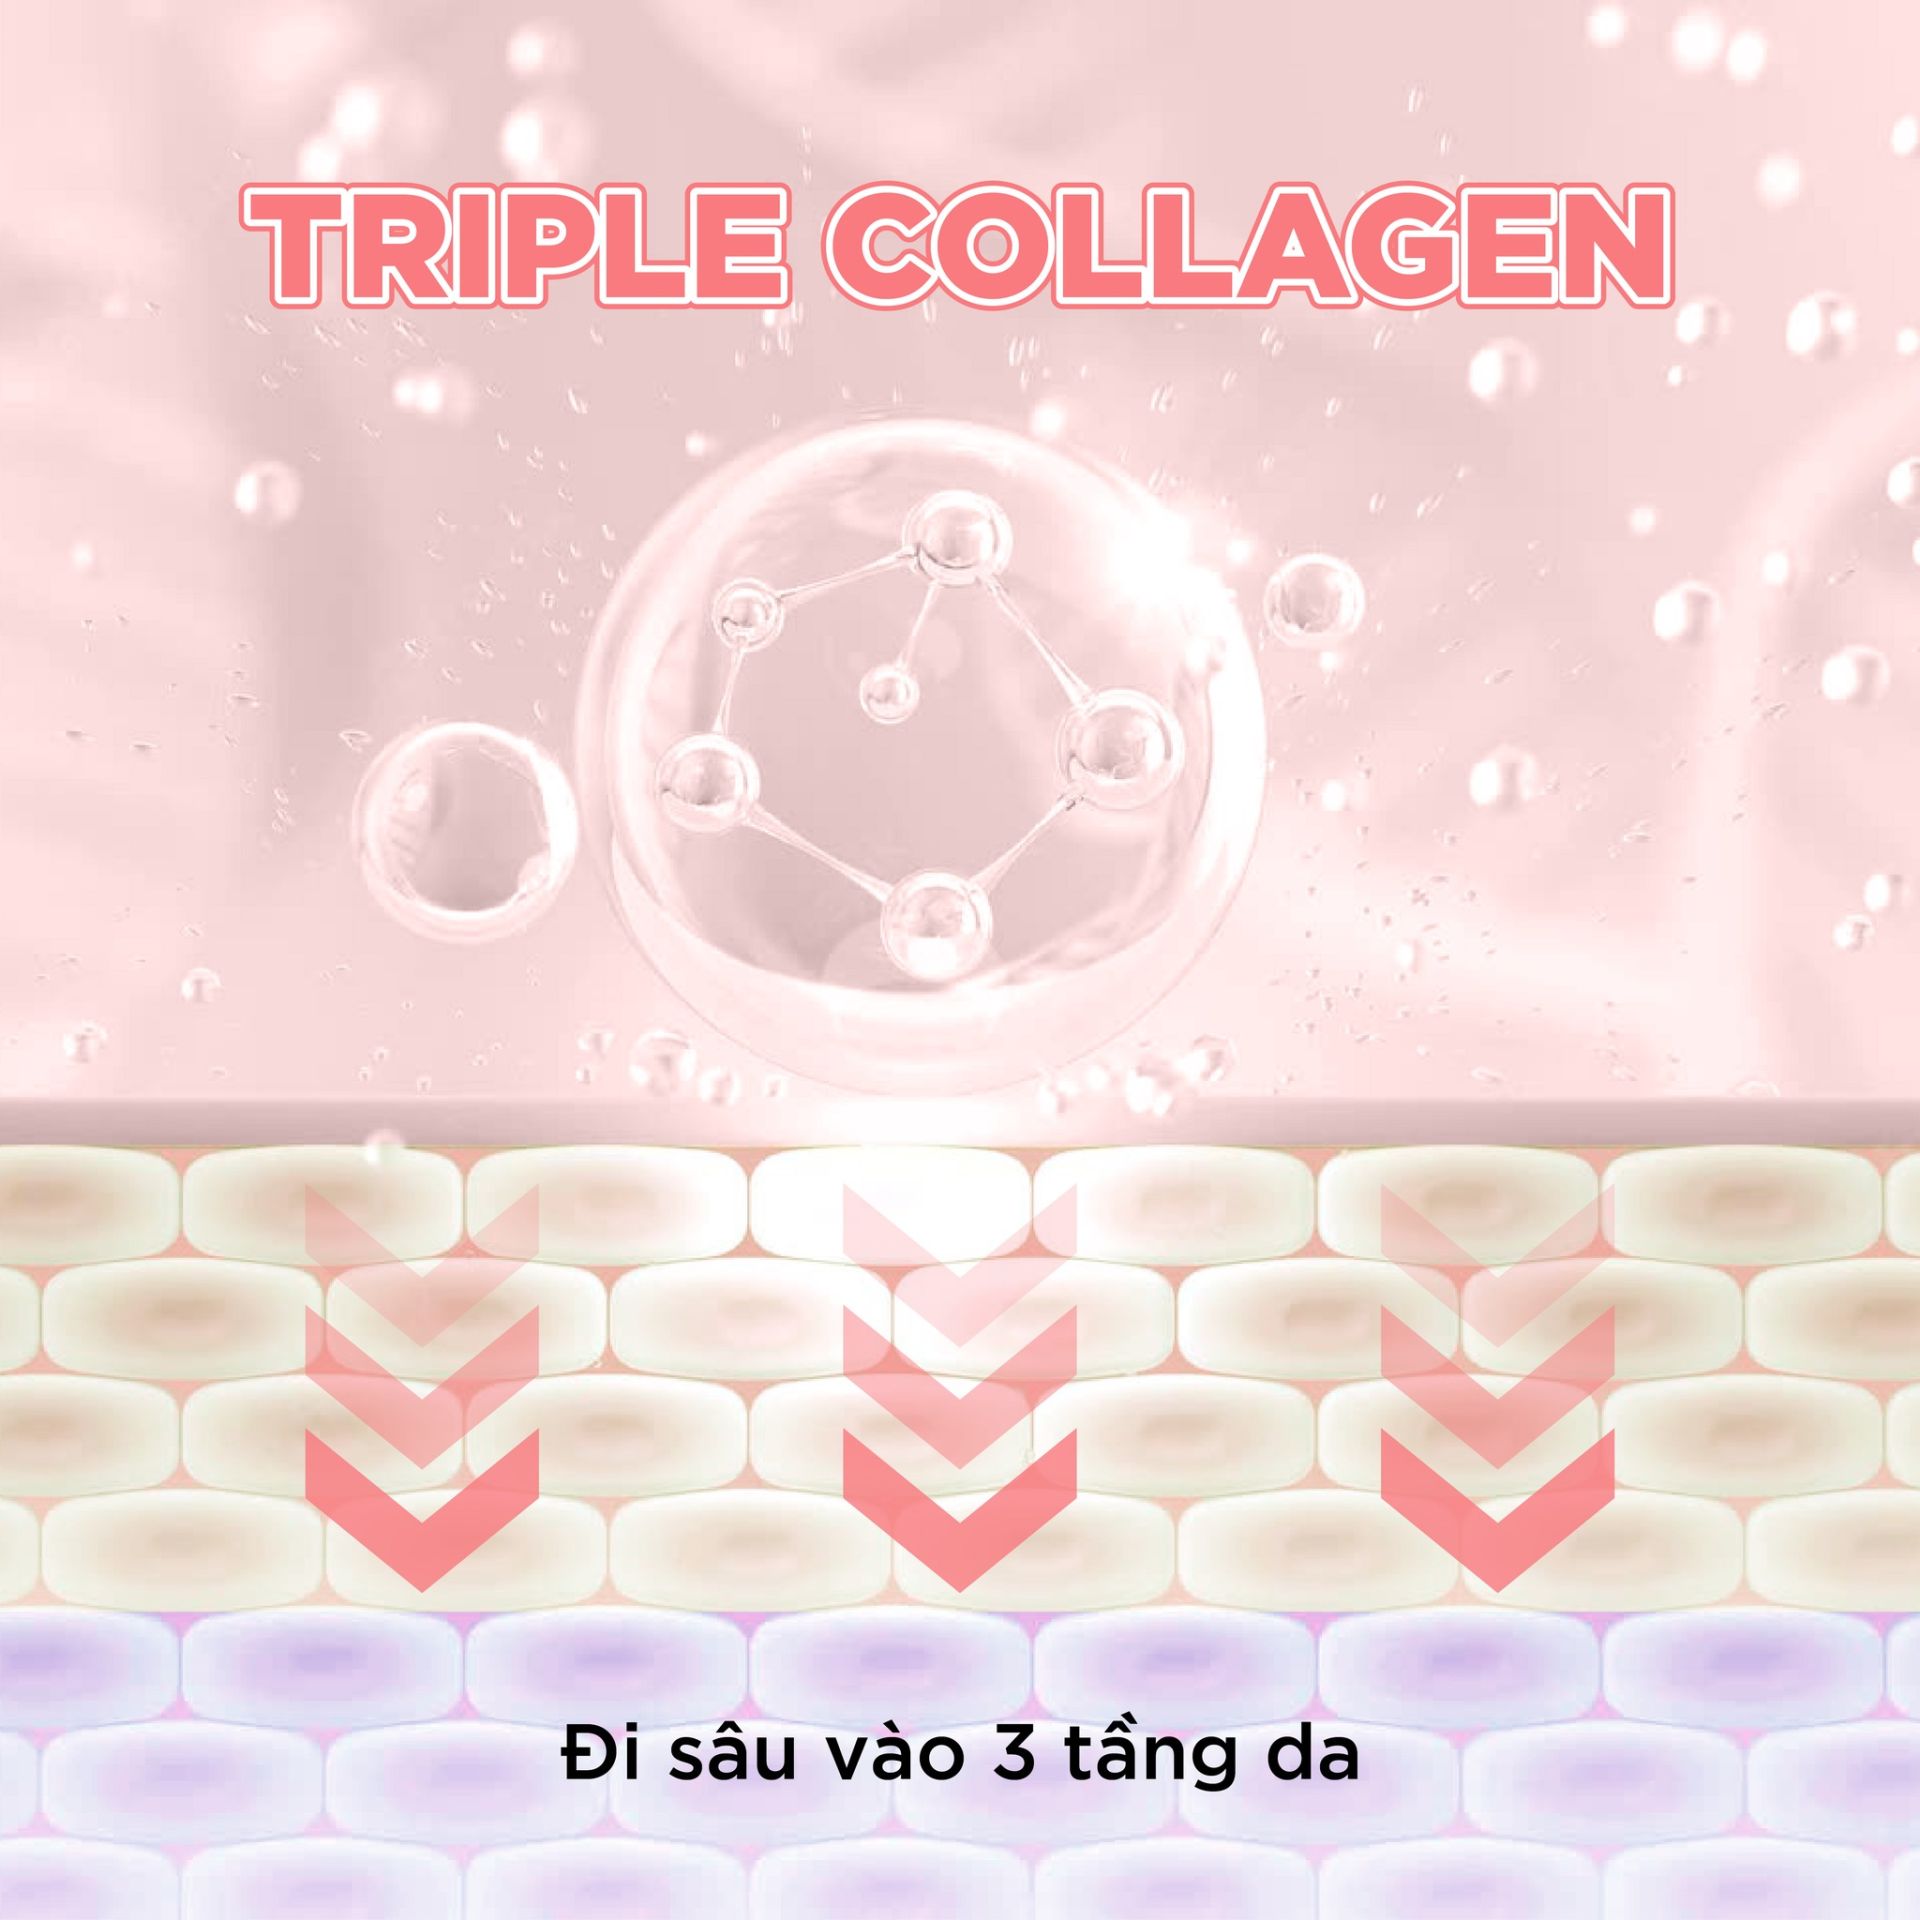 Công nghệ triple collagen đột phá